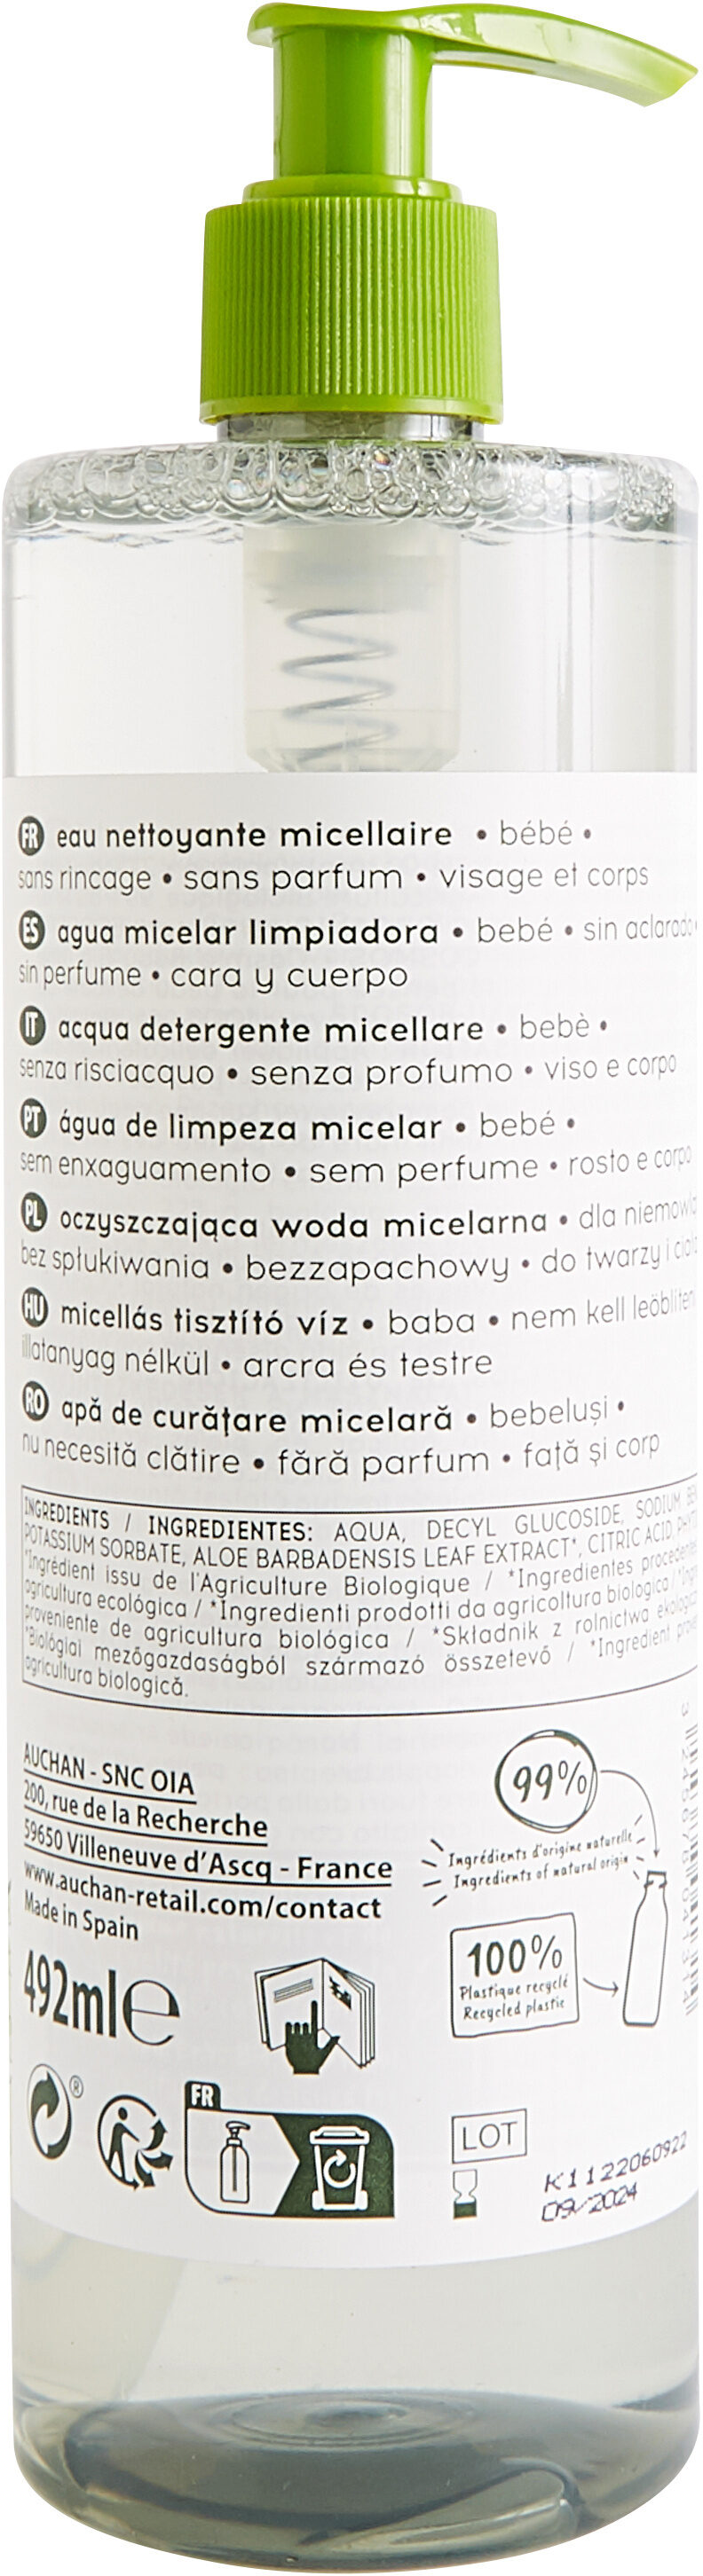 Auchan baby cosmos bio - eau nettoyante micellaire - sans rincage visage et corps - bébé - 492 ml - Product - en